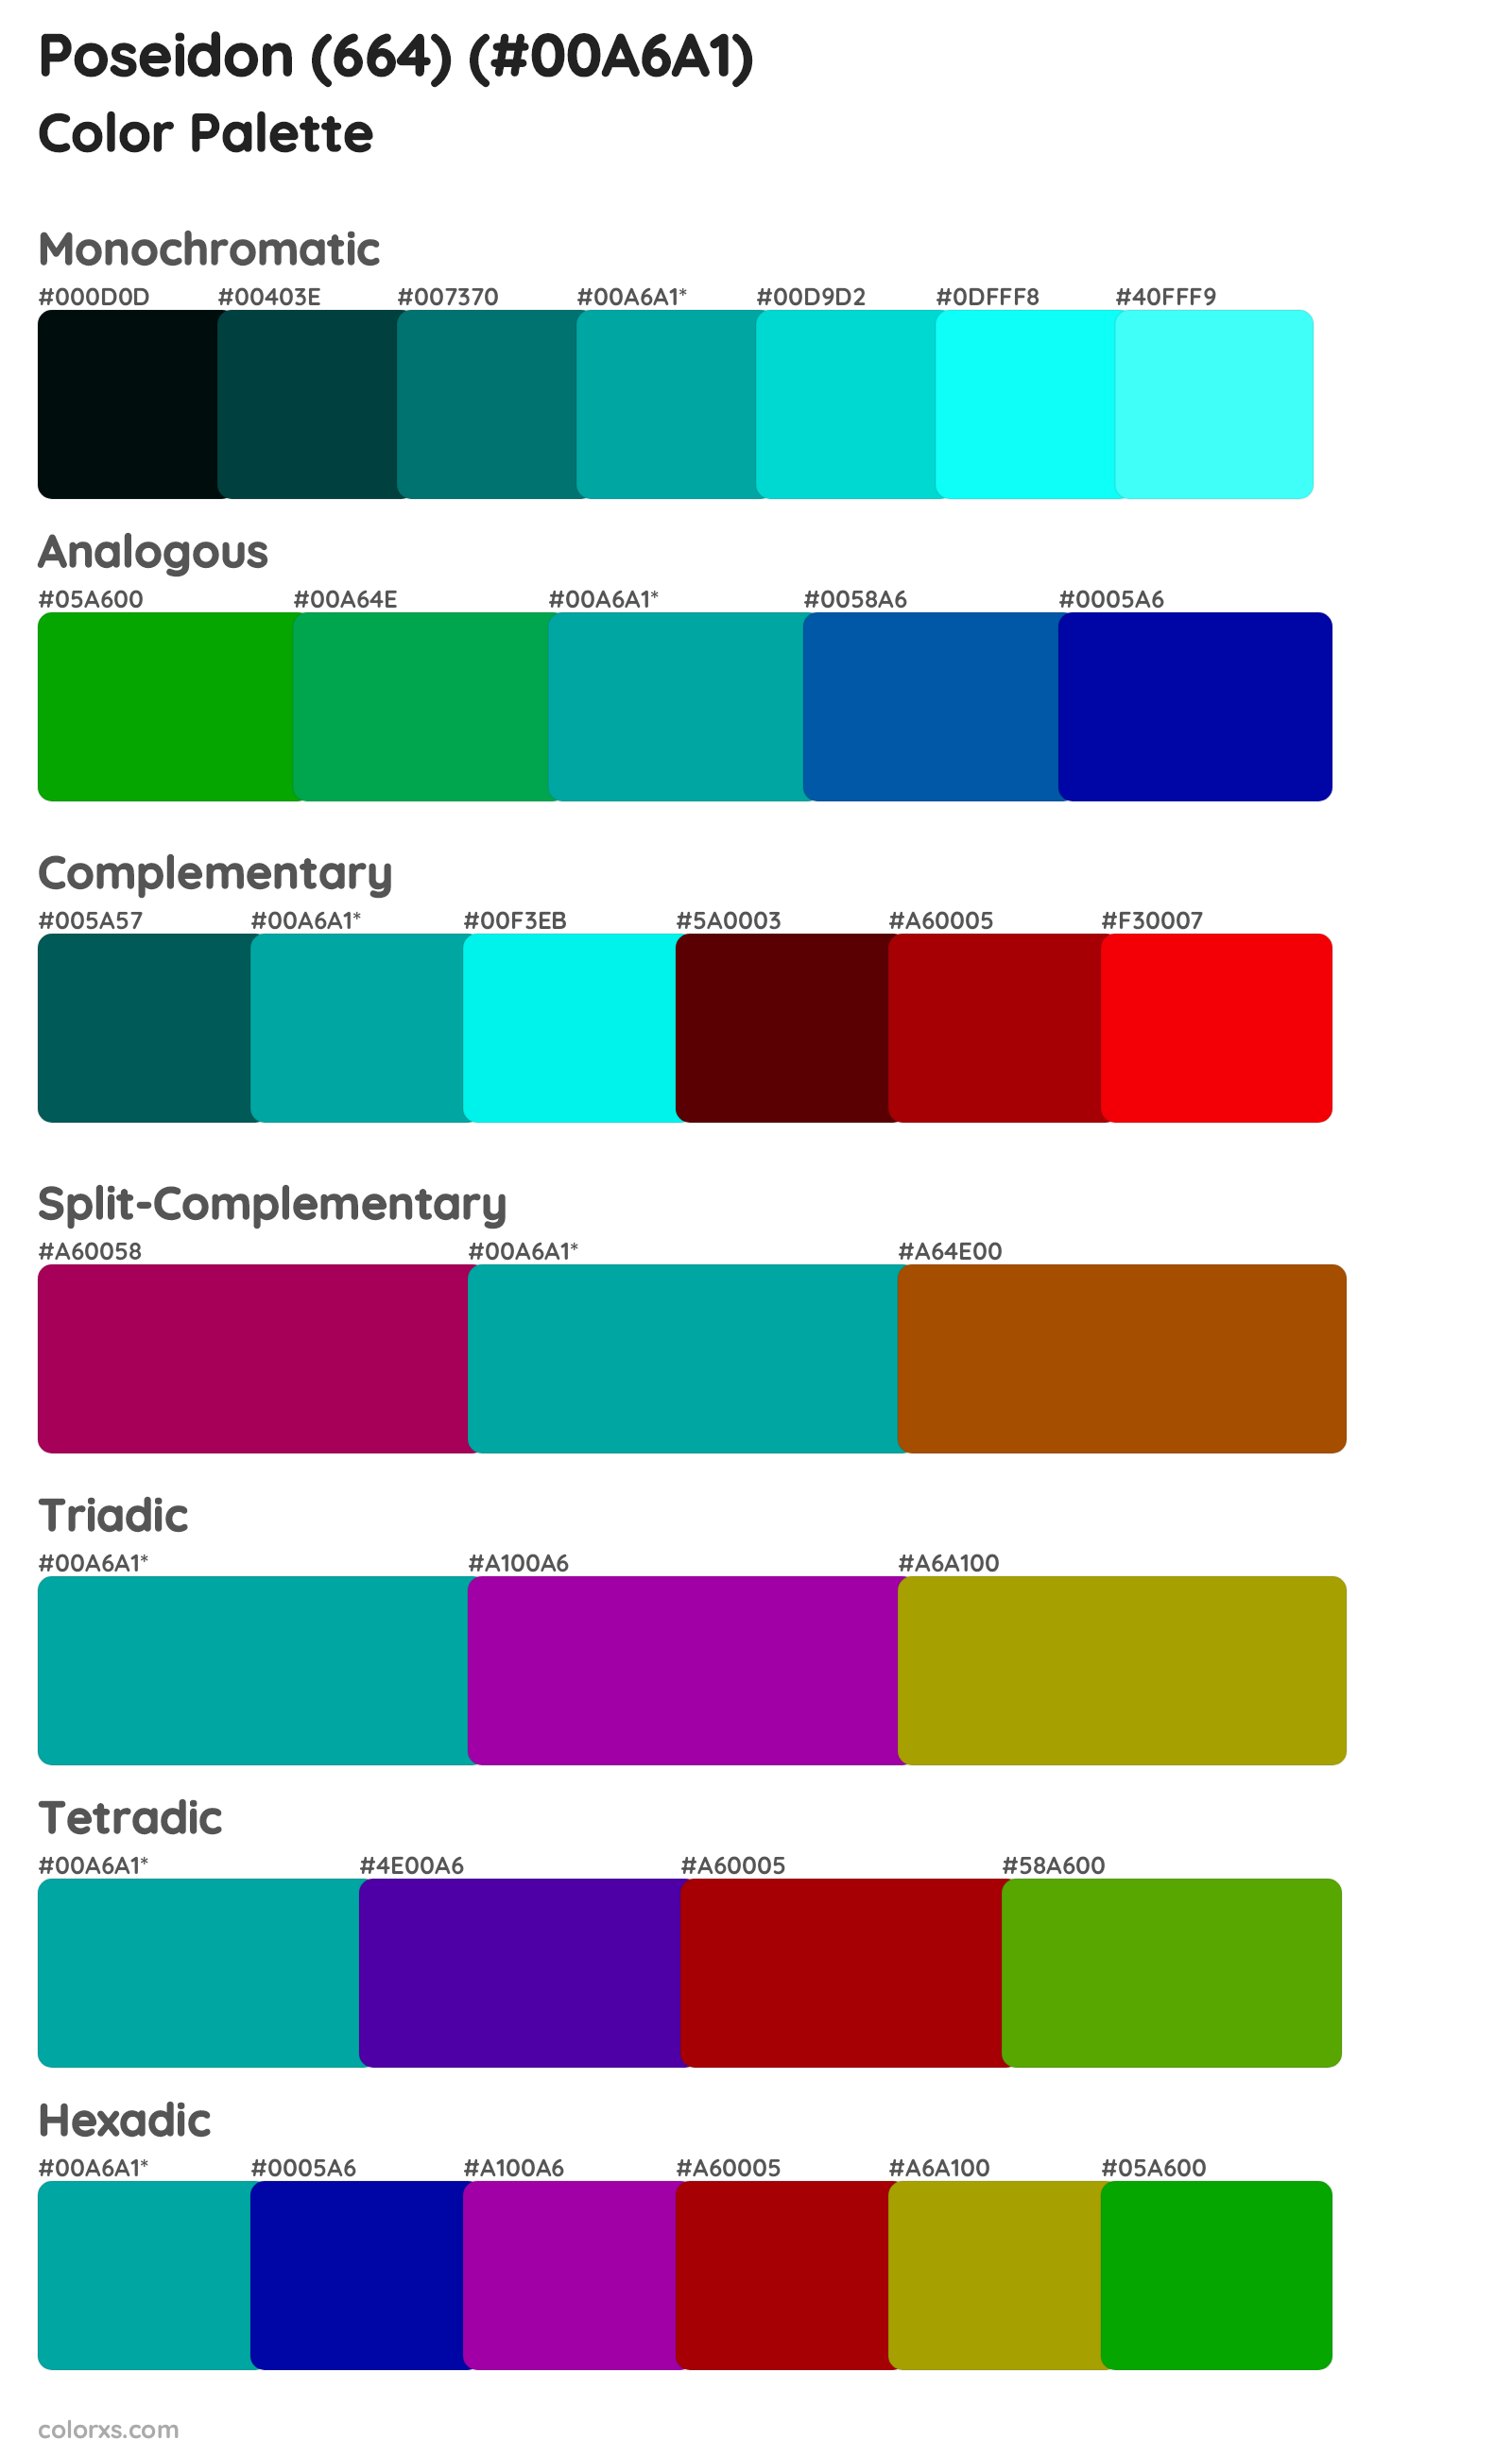 Poseidon (664) Color Scheme Palettes